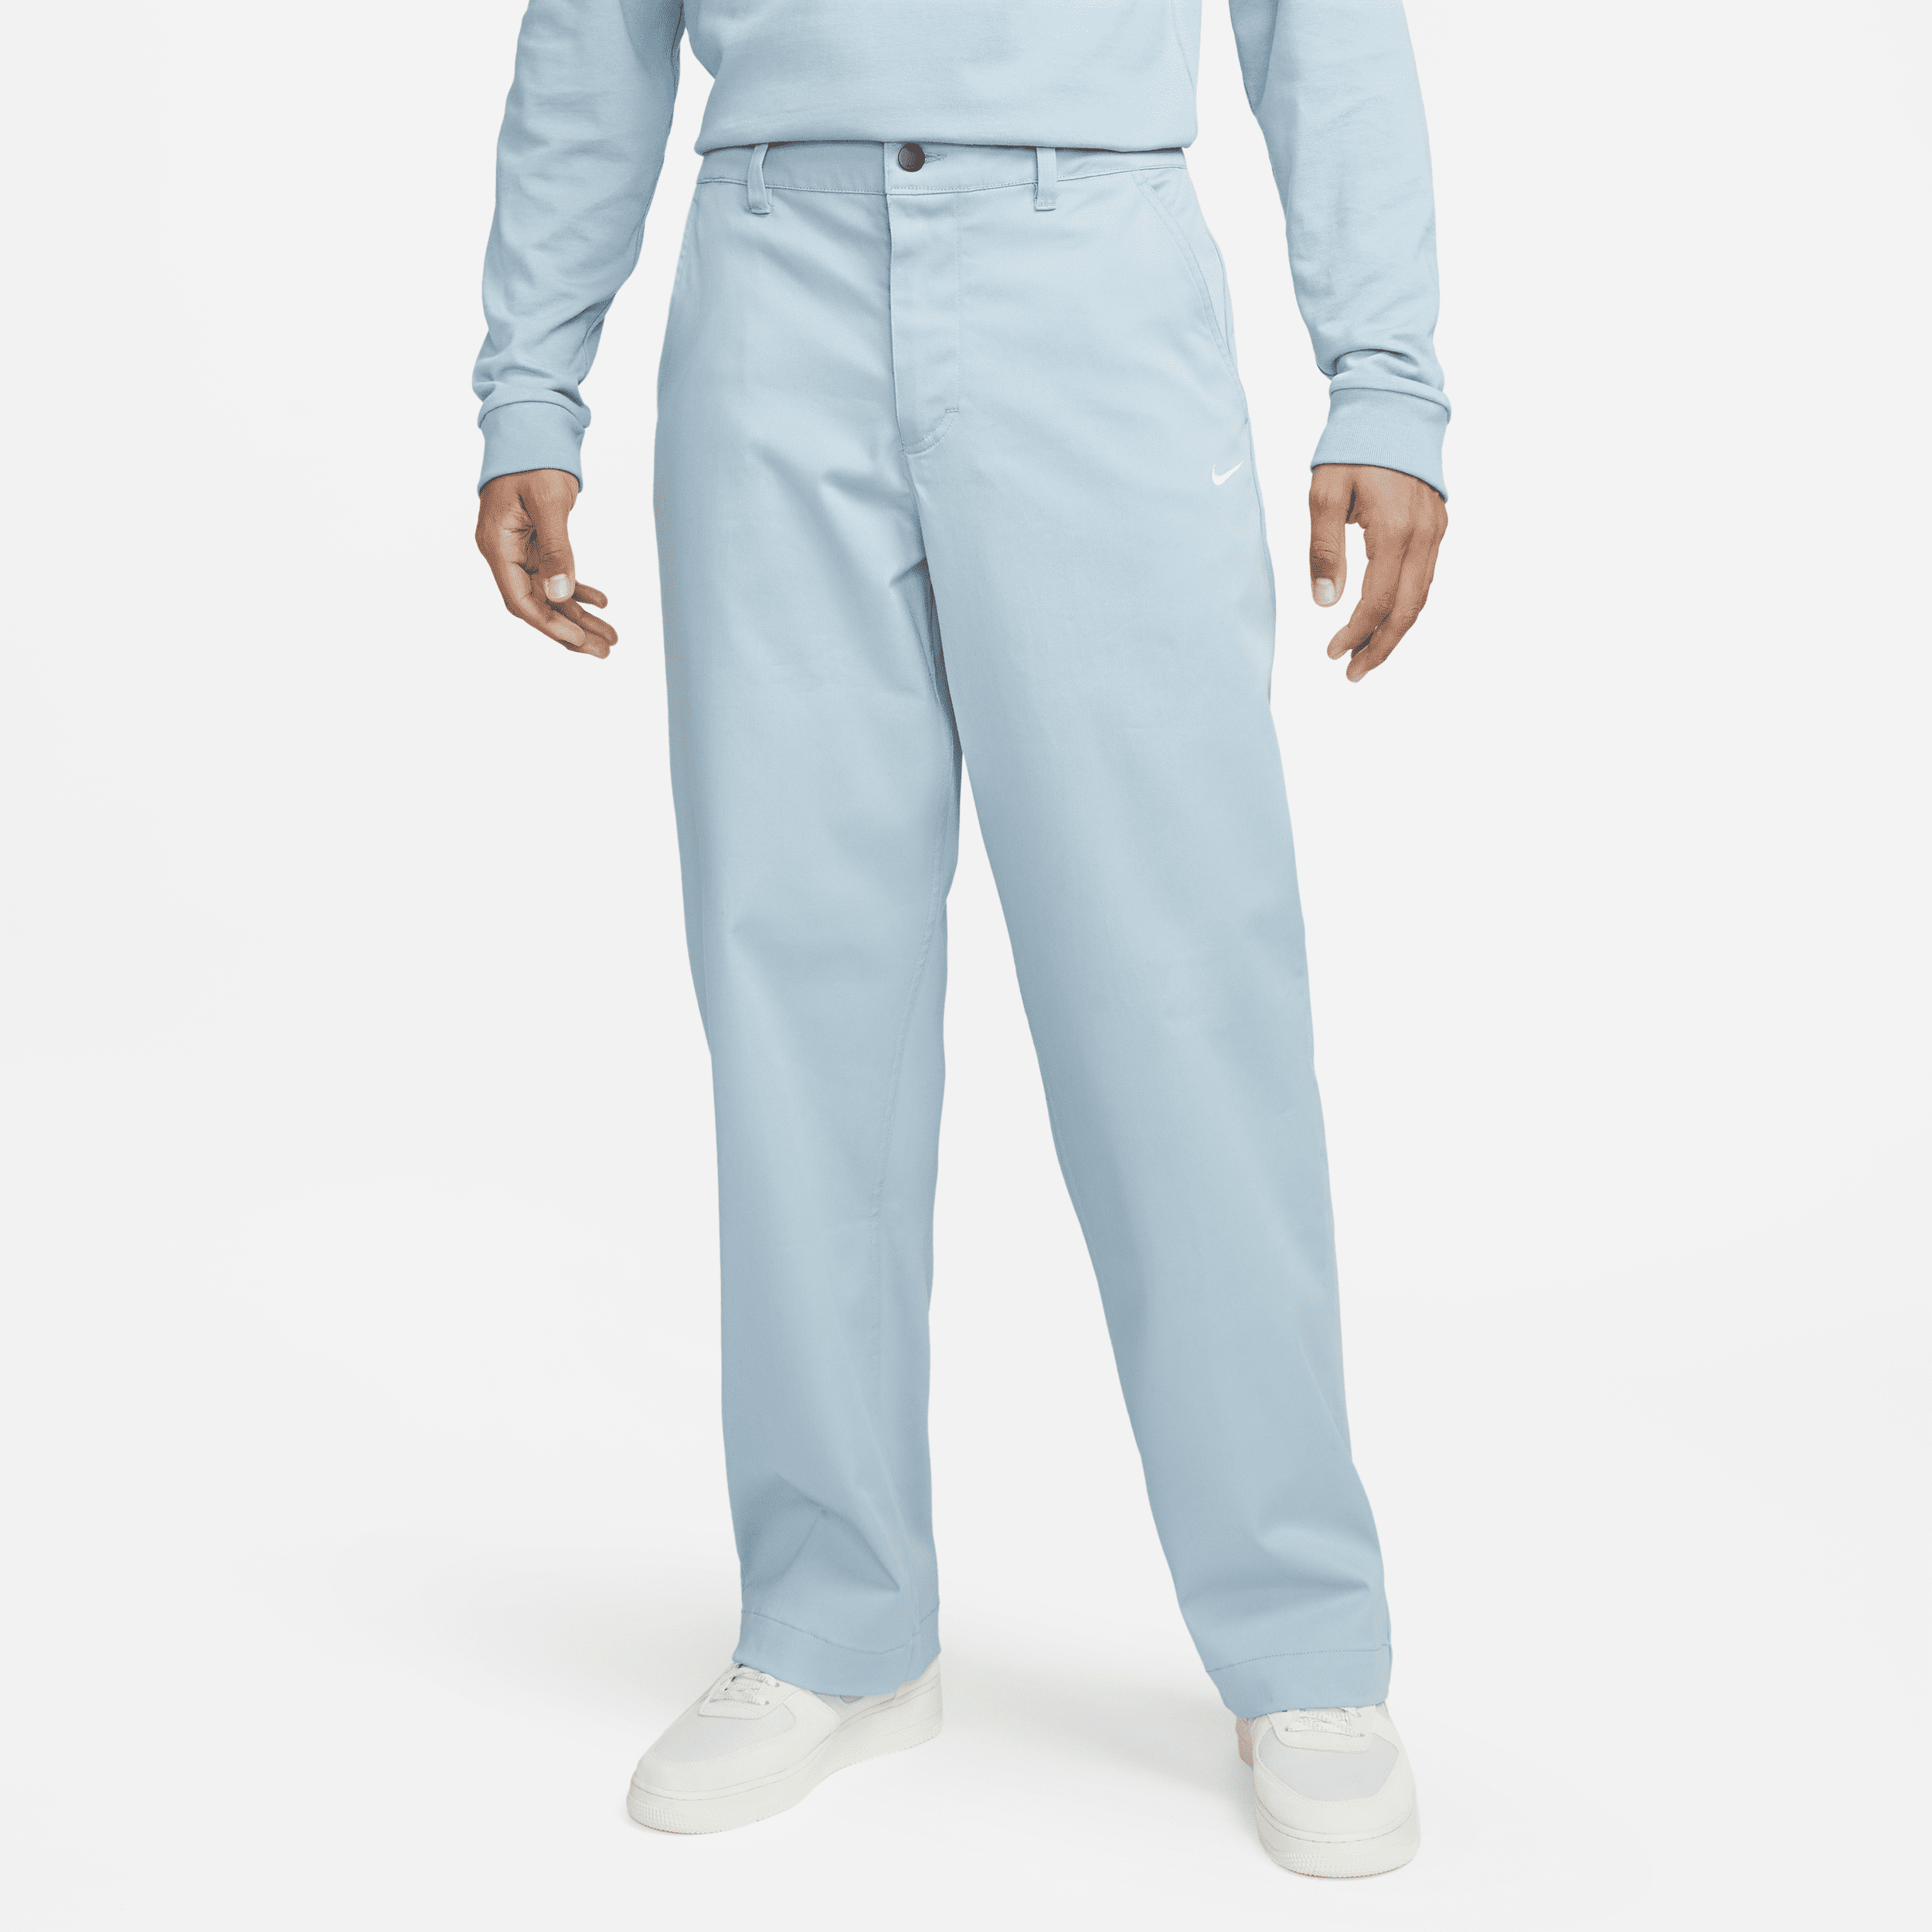 Nike Life Pantalón chino de algodón sin forro - Hombre - Azul